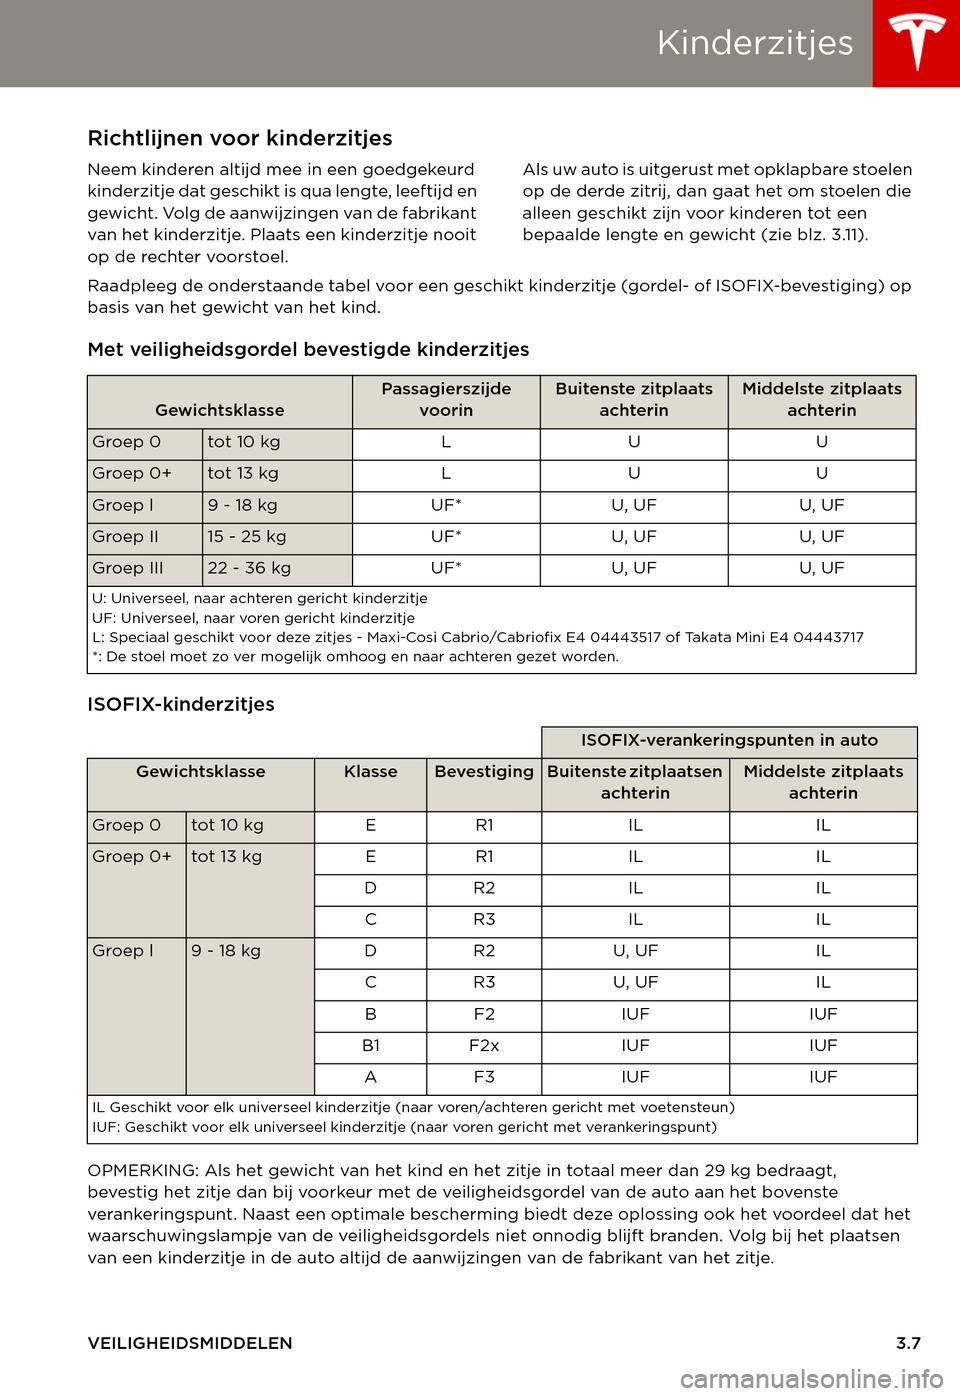 TESLA MODEL S 2015  Handleiding (in Dutch) Kinderzitjes
VEILIGHEIDSMIDDELEN3.7
KinderzitjesRichtlijnen voor kinderzitjes
Neem kinderen altijd mee in een goedgekeurd kinderzitje dat geschikt is qua lengte, leeftijd en gewicht. Volg de aanwijzin